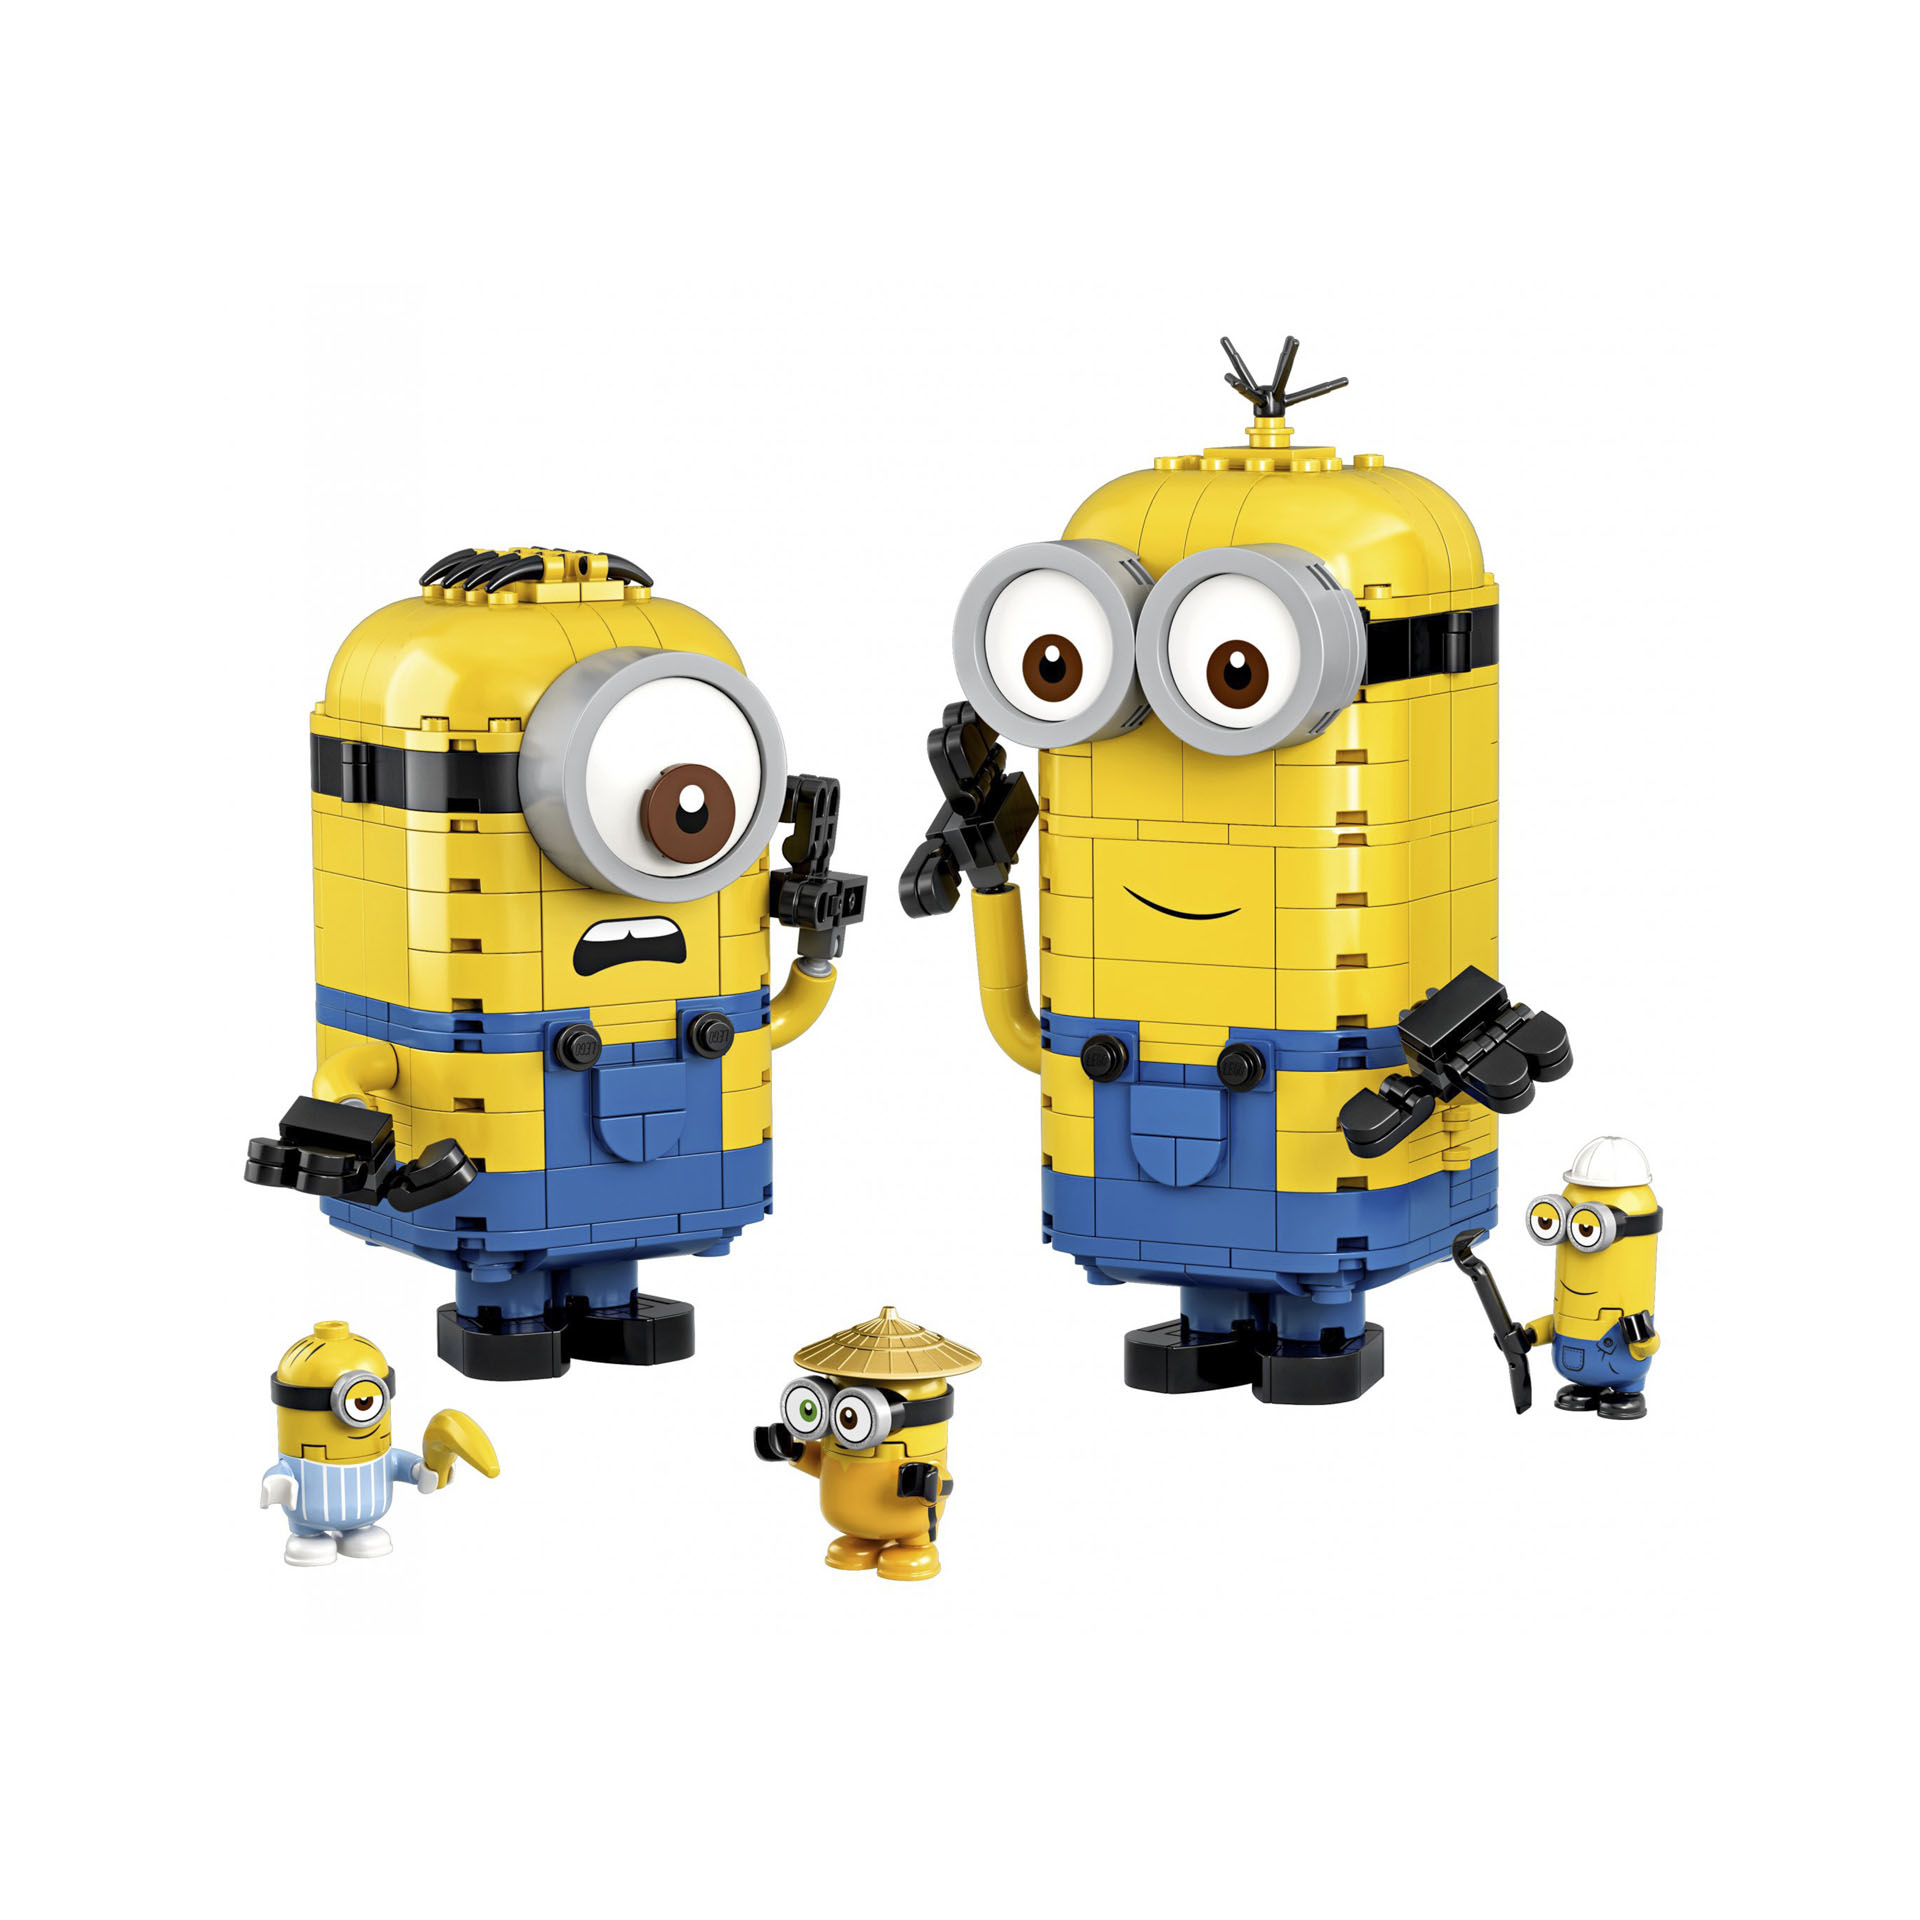 LEGO Minions Personaggi Minions e la loro Tana, Set di Costruzioni da Esporre co 75551, , large